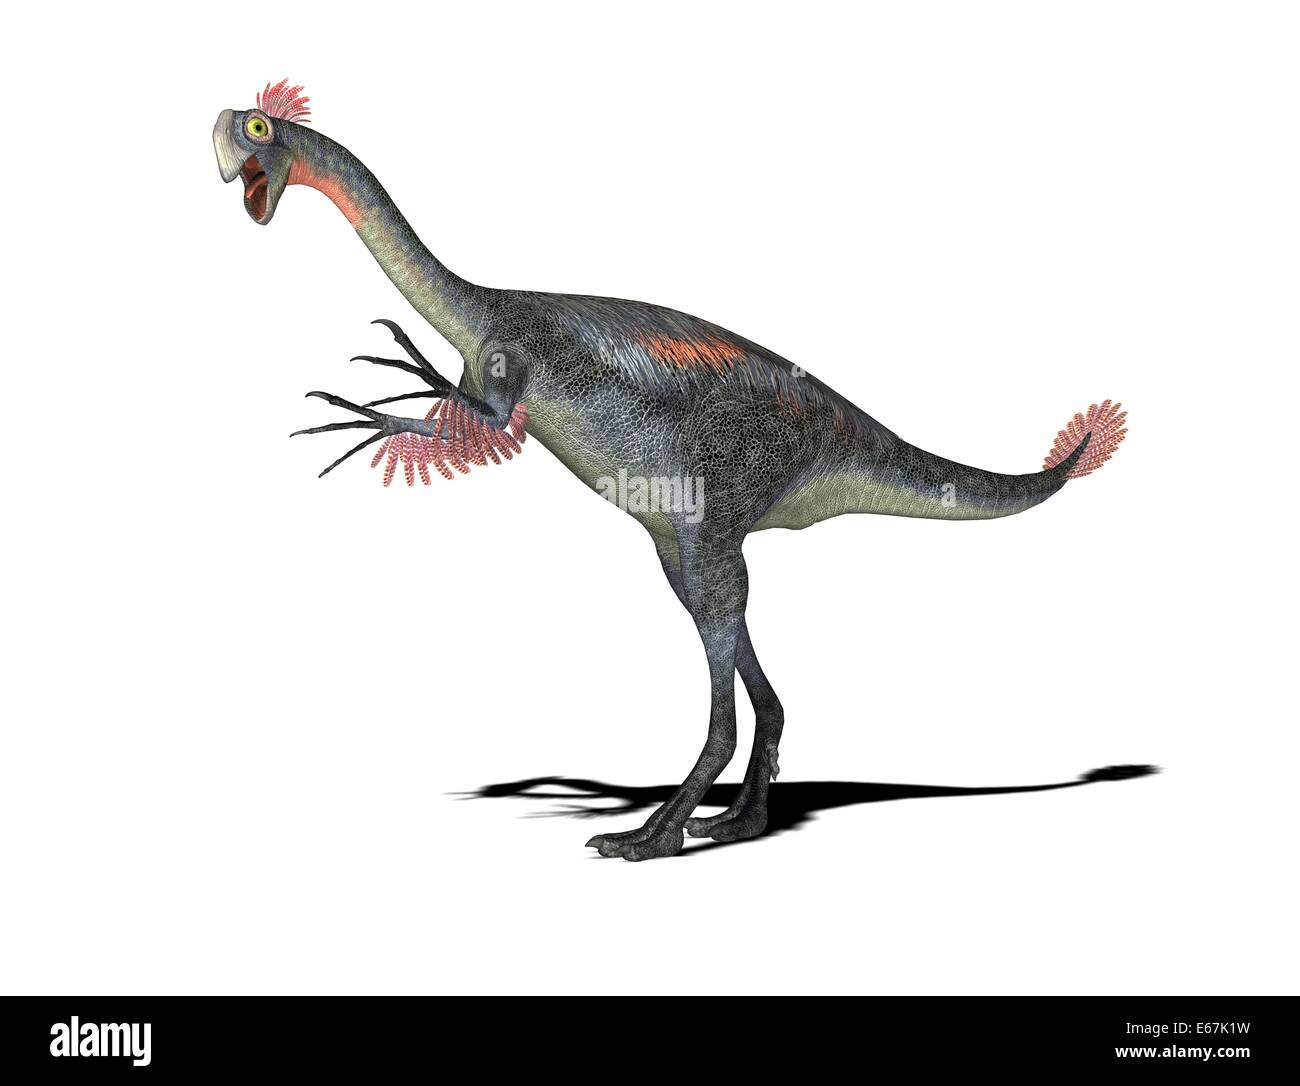 Dinosaurier Gigantoraptor / dinosaur Gigantoraptor Stock Photo